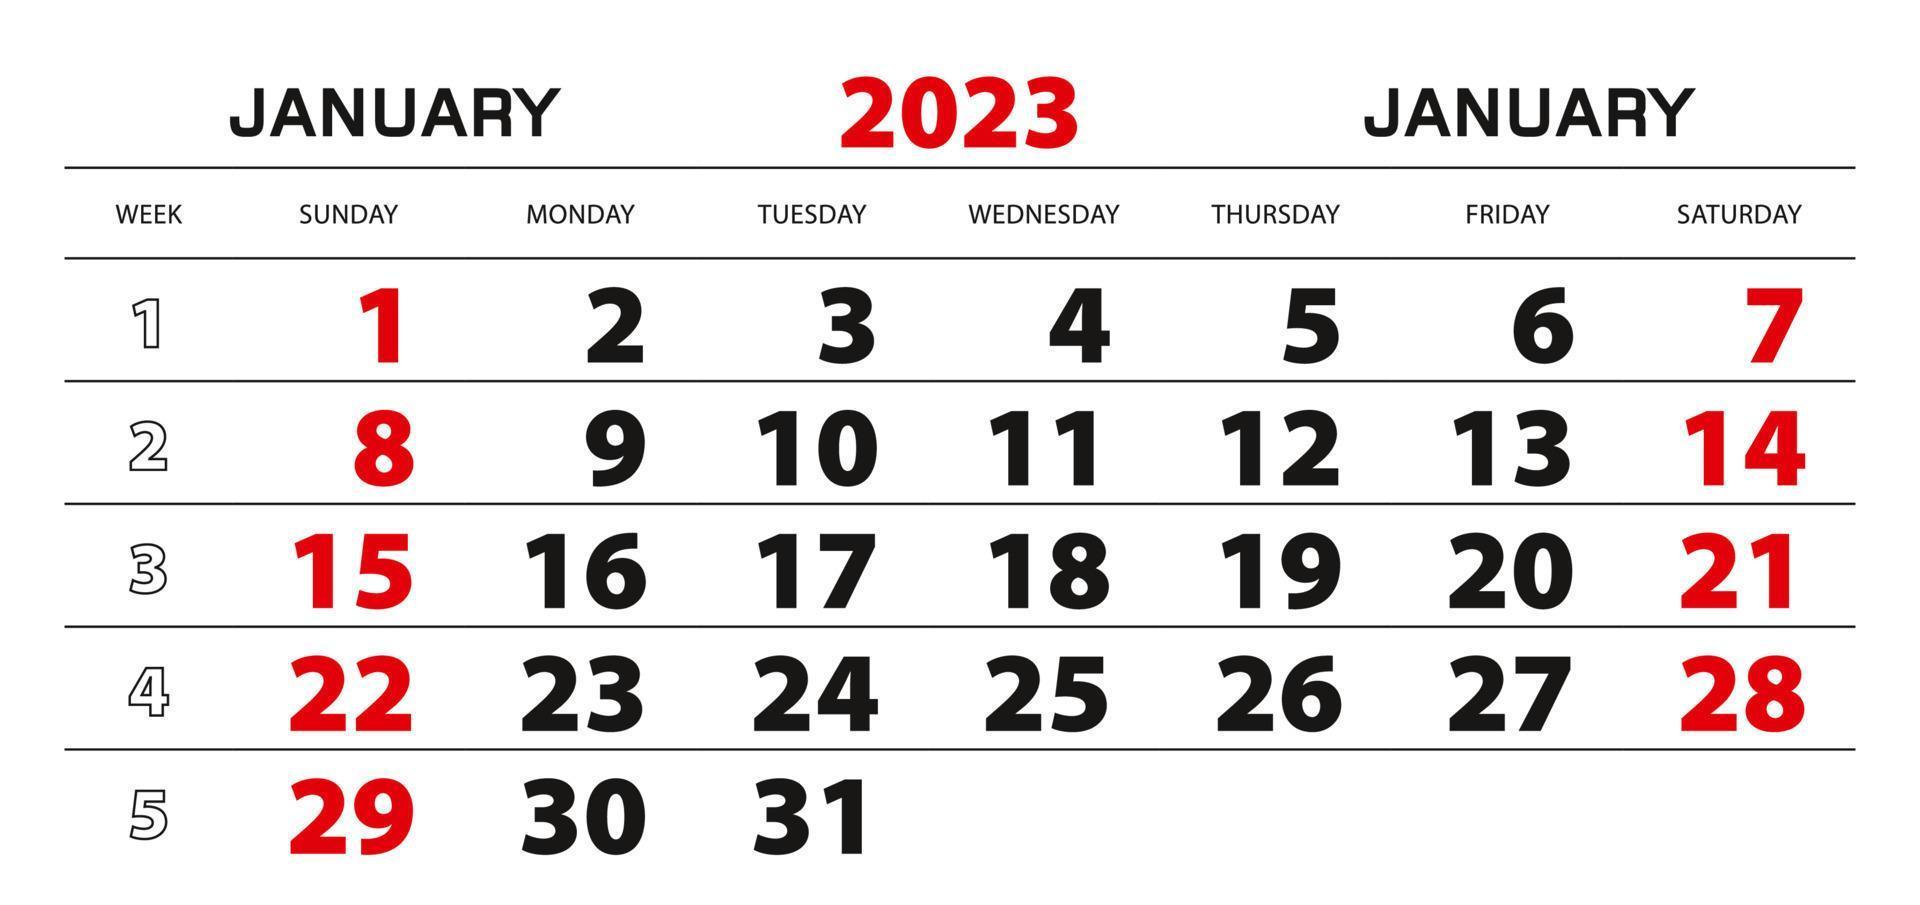 calendário de parede 2023 para janeiro, início da semana a partir de domingo. vetor